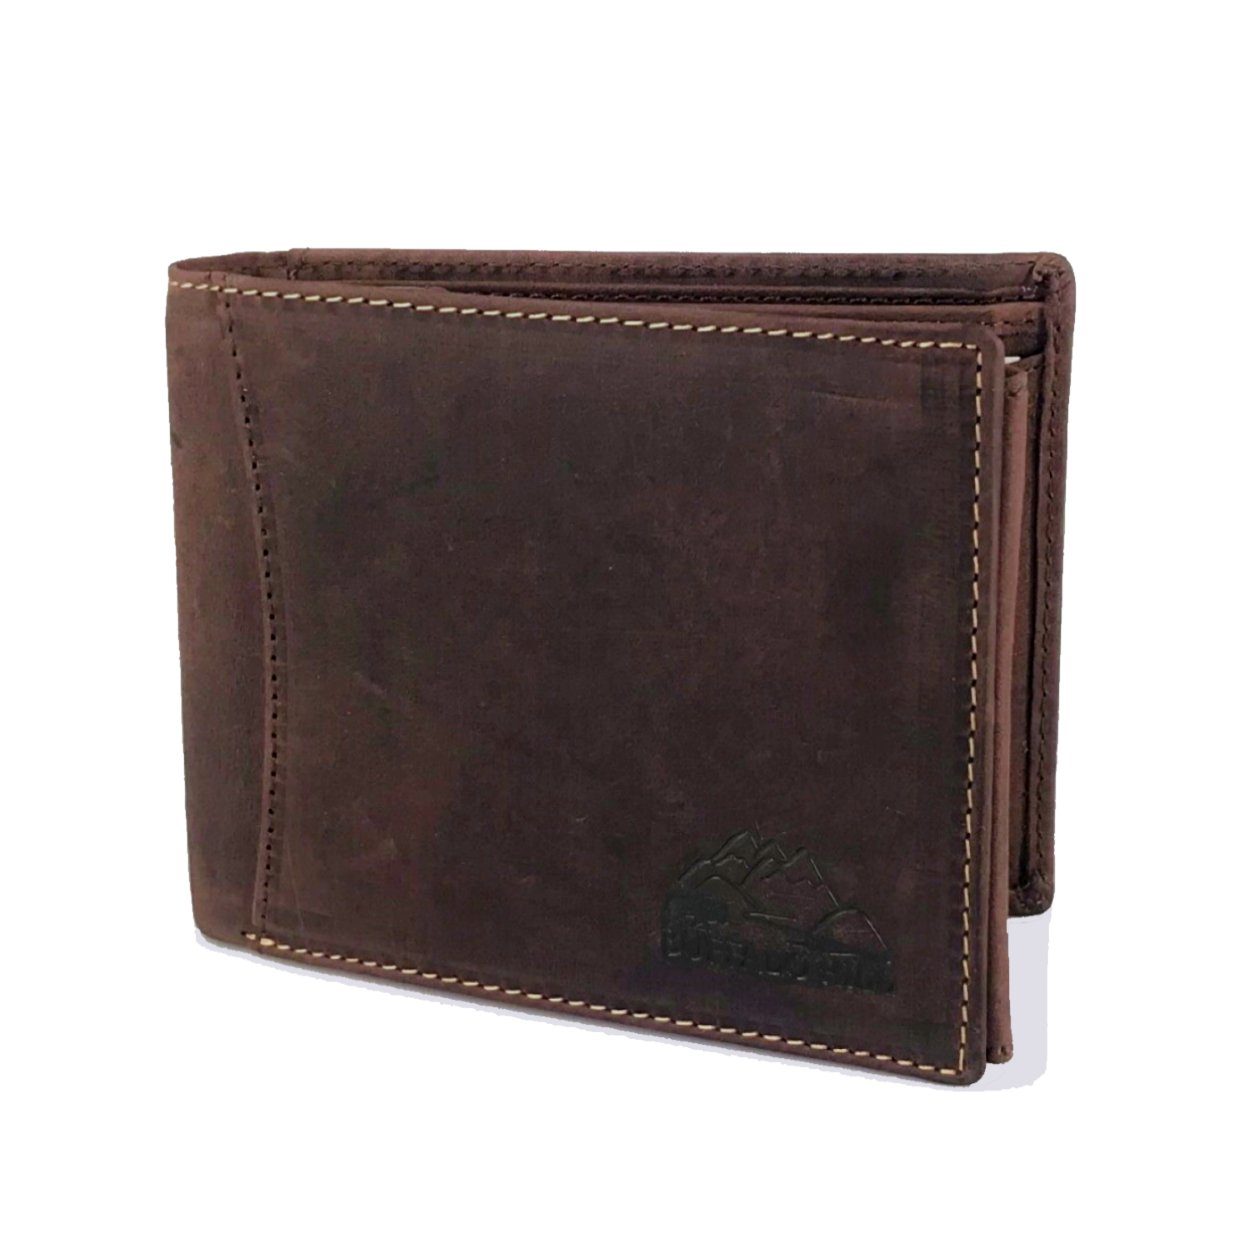 L&B Geldbörse Büffelleder Portemonnaie, integrierter RFID-Schutz, elegantes Wallet im Querformat mit 8 Kartenfächern in Braun